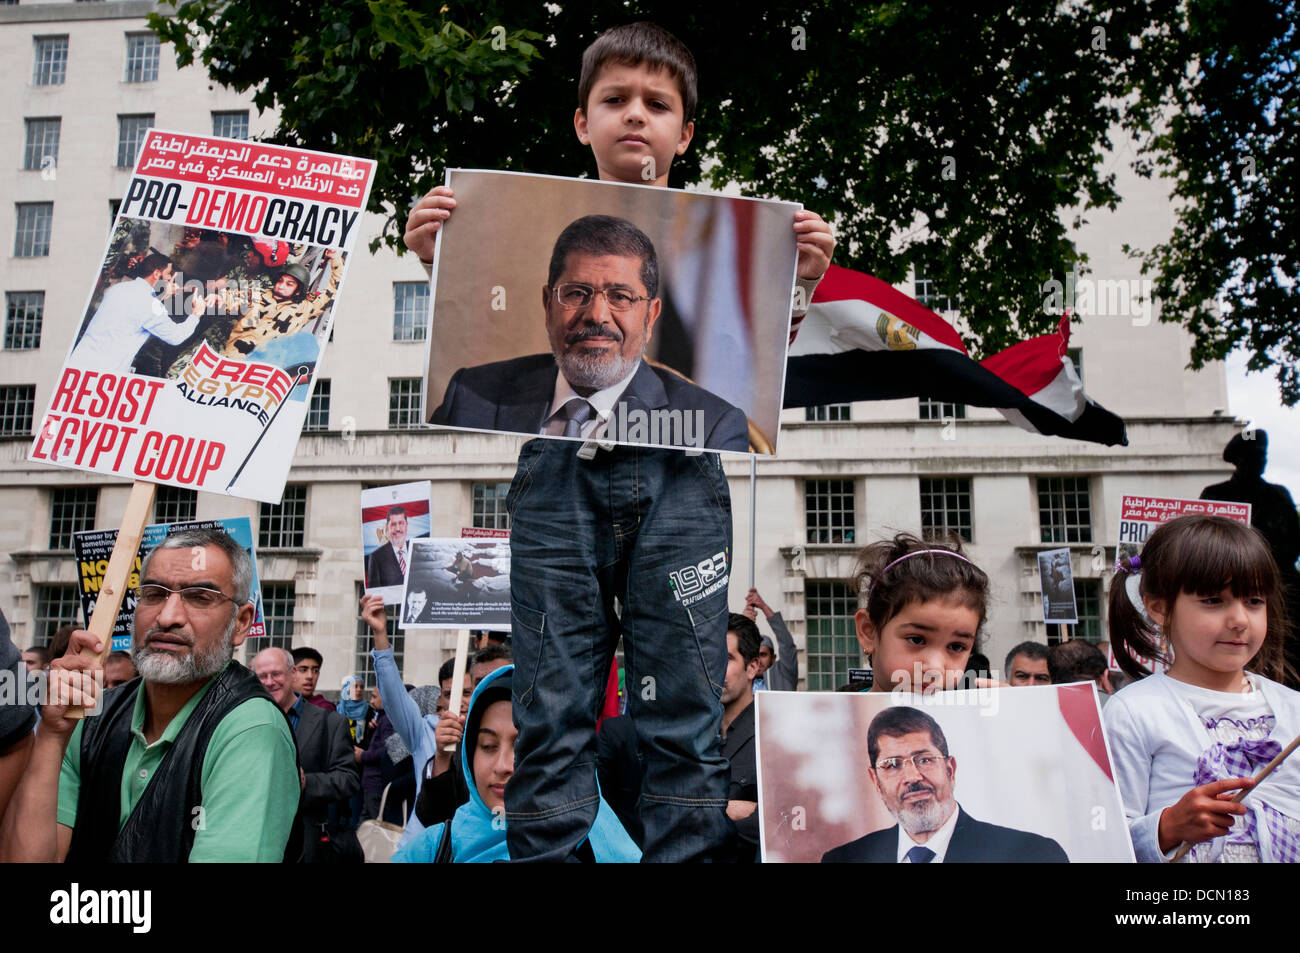 La Confrérie égyptienne et des partisans de Morsi protester à Londres contre Sisi & prise de coup d'armée ( ) en Egypte. Août 2013 Banque D'Images